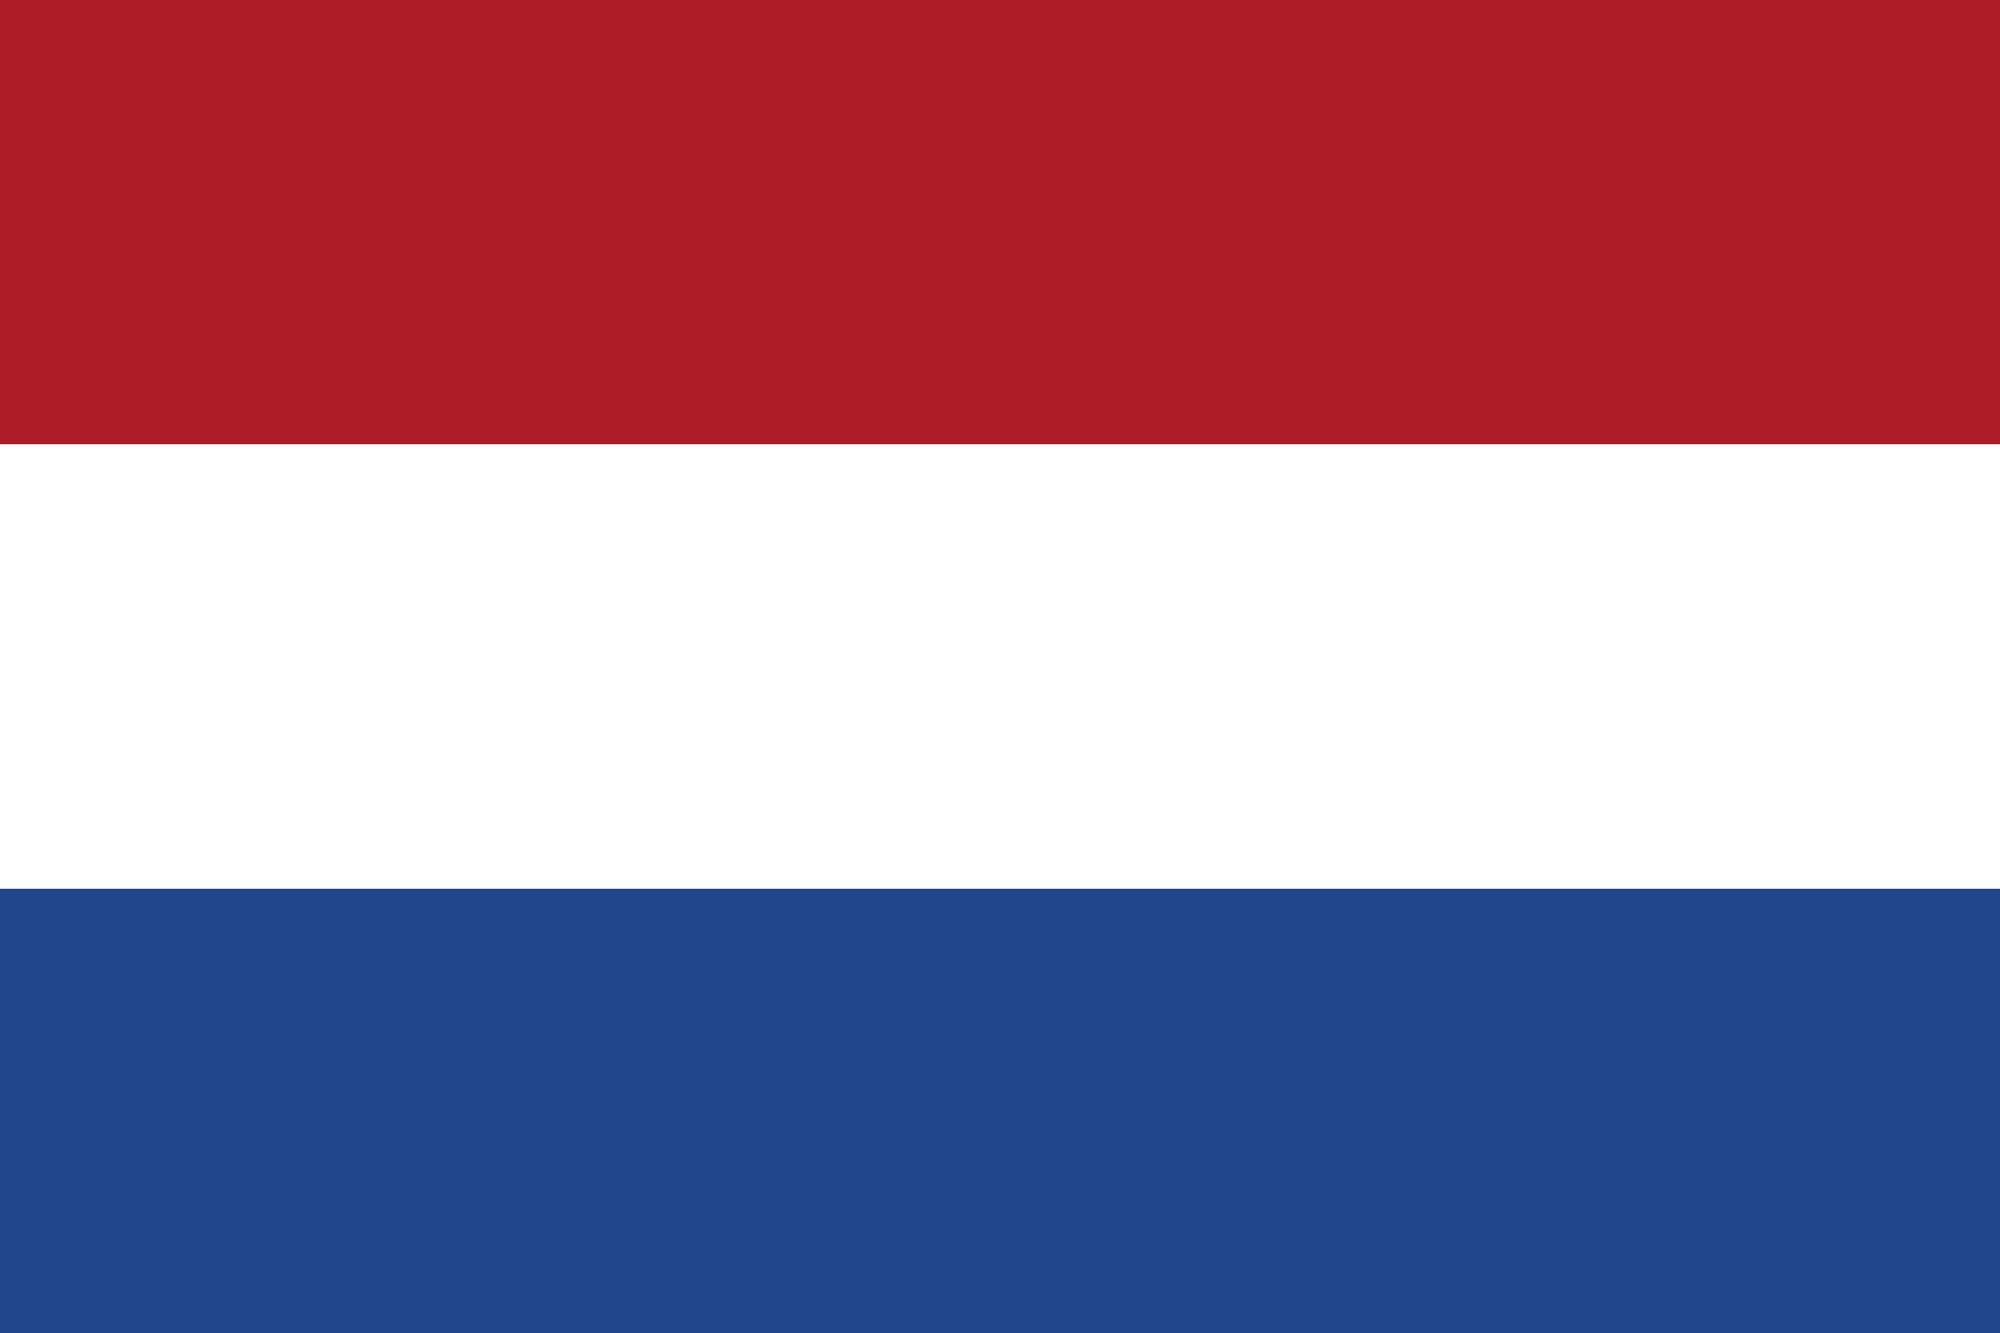 法国国旗换颜色图片